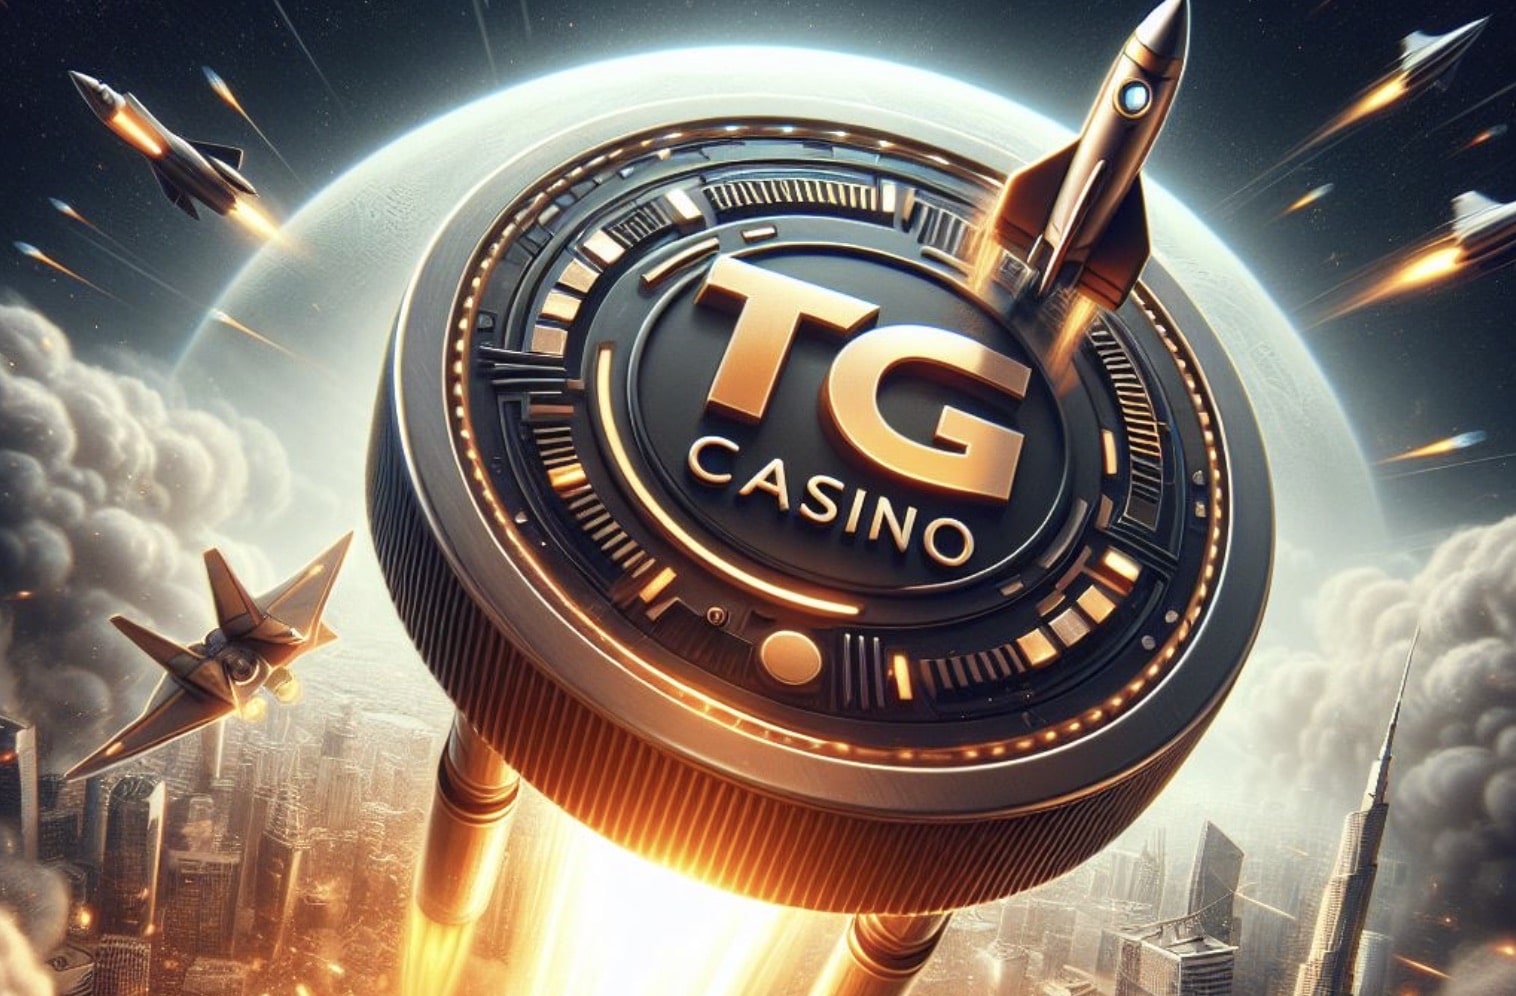 TG.Casino lässt Rollbit hinter sich: Casino übertrifft alle Erwartungen, $155 Mio. in einem Monat erwirtschaftet